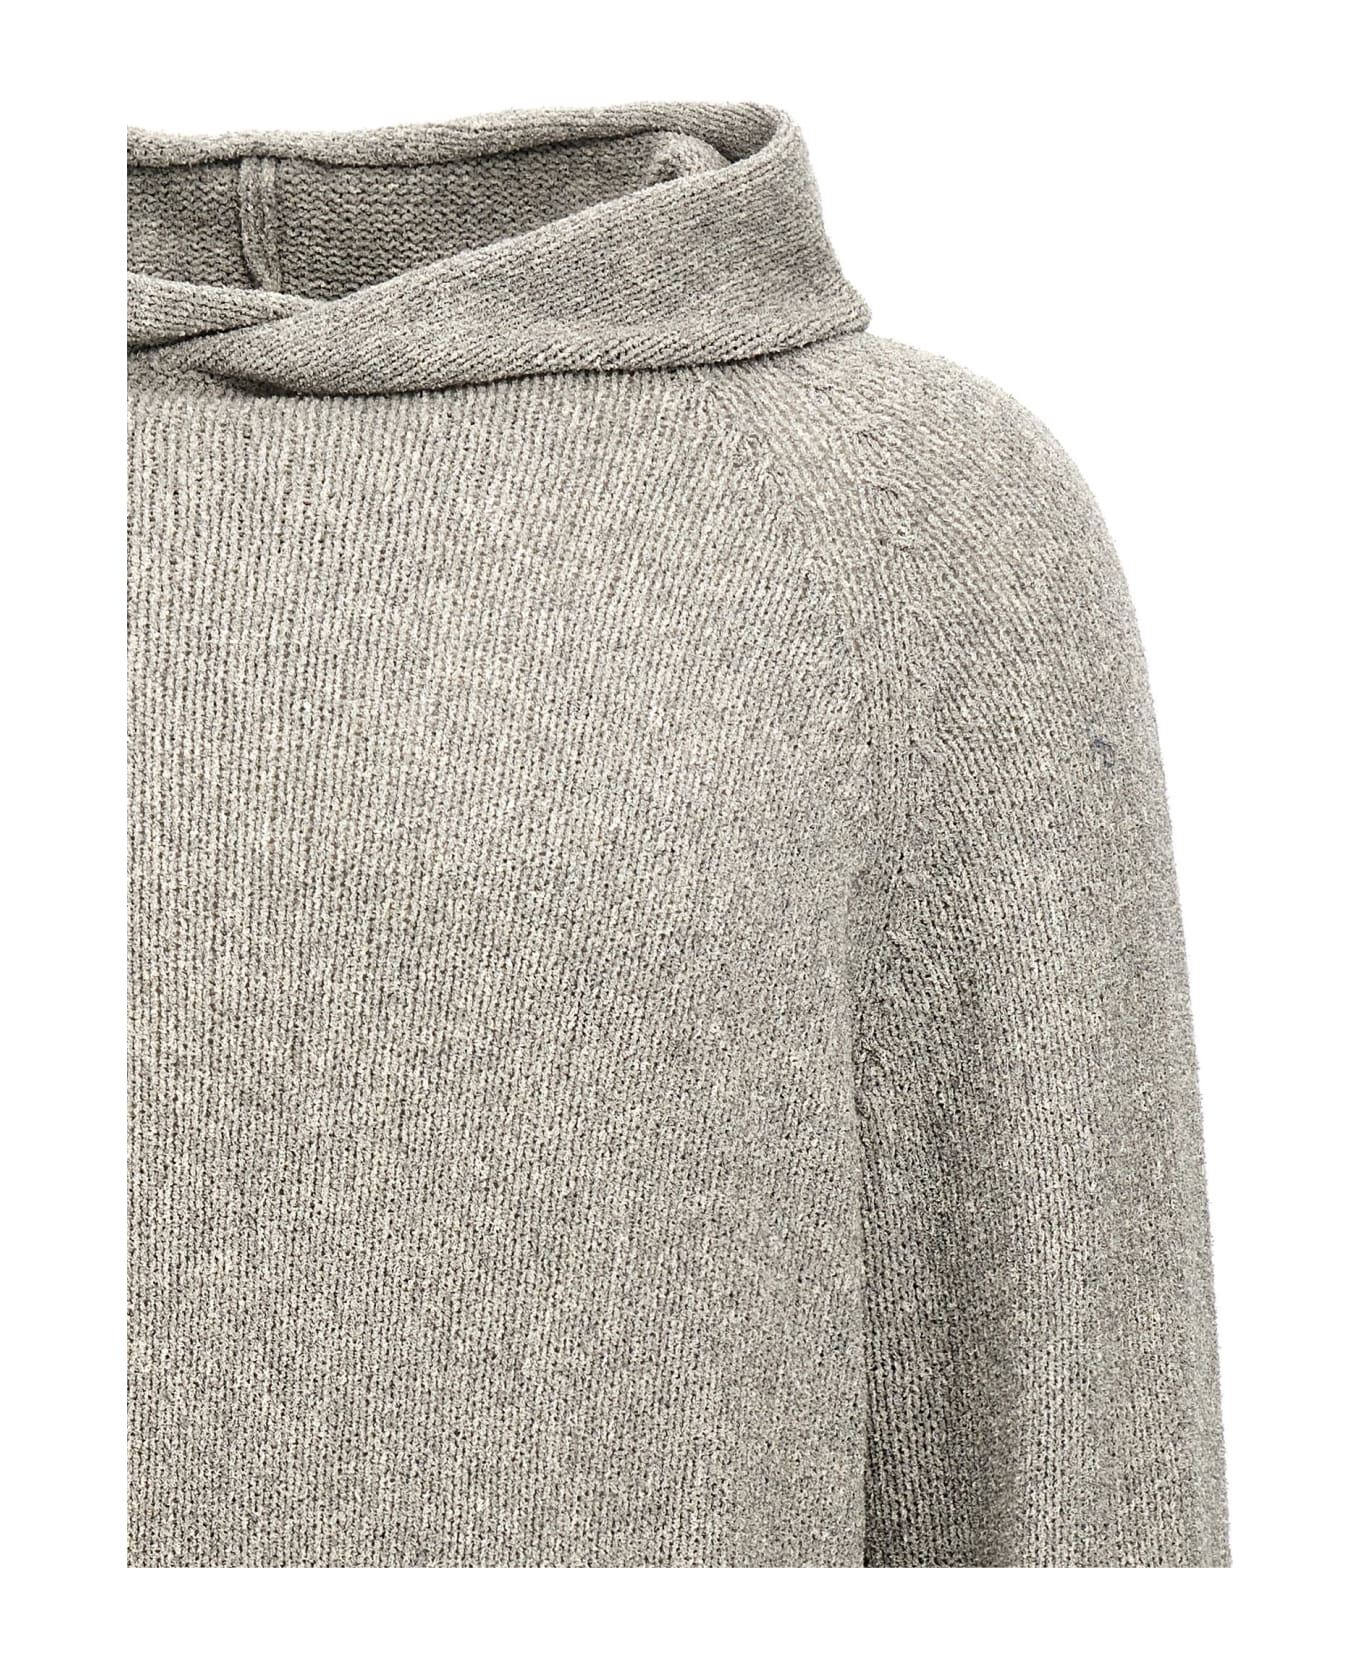 Ma'ry'ya Hooded Sweater - Gray ニットウェア